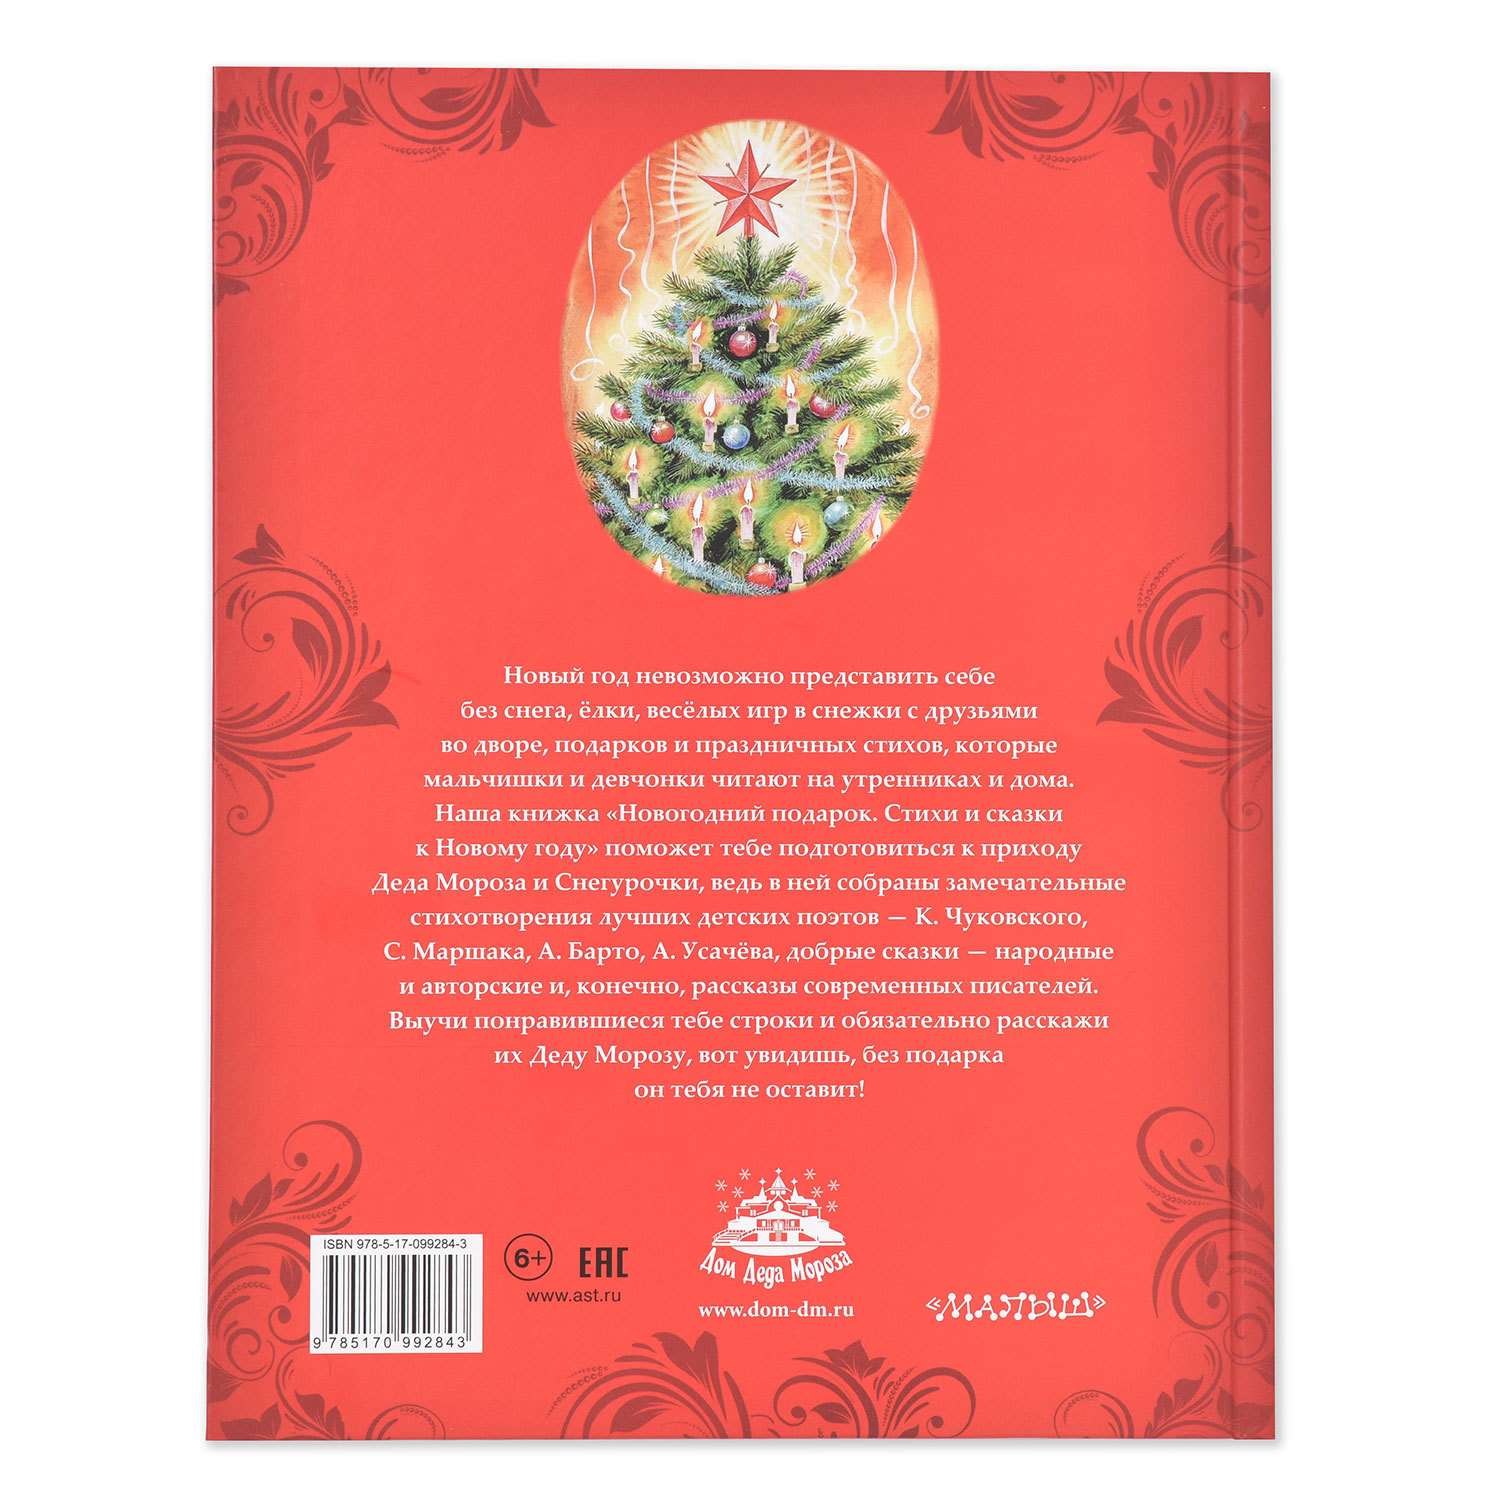 Книга АСТ Новогодний подарок Стихи и сказки к Новому году - фото 4